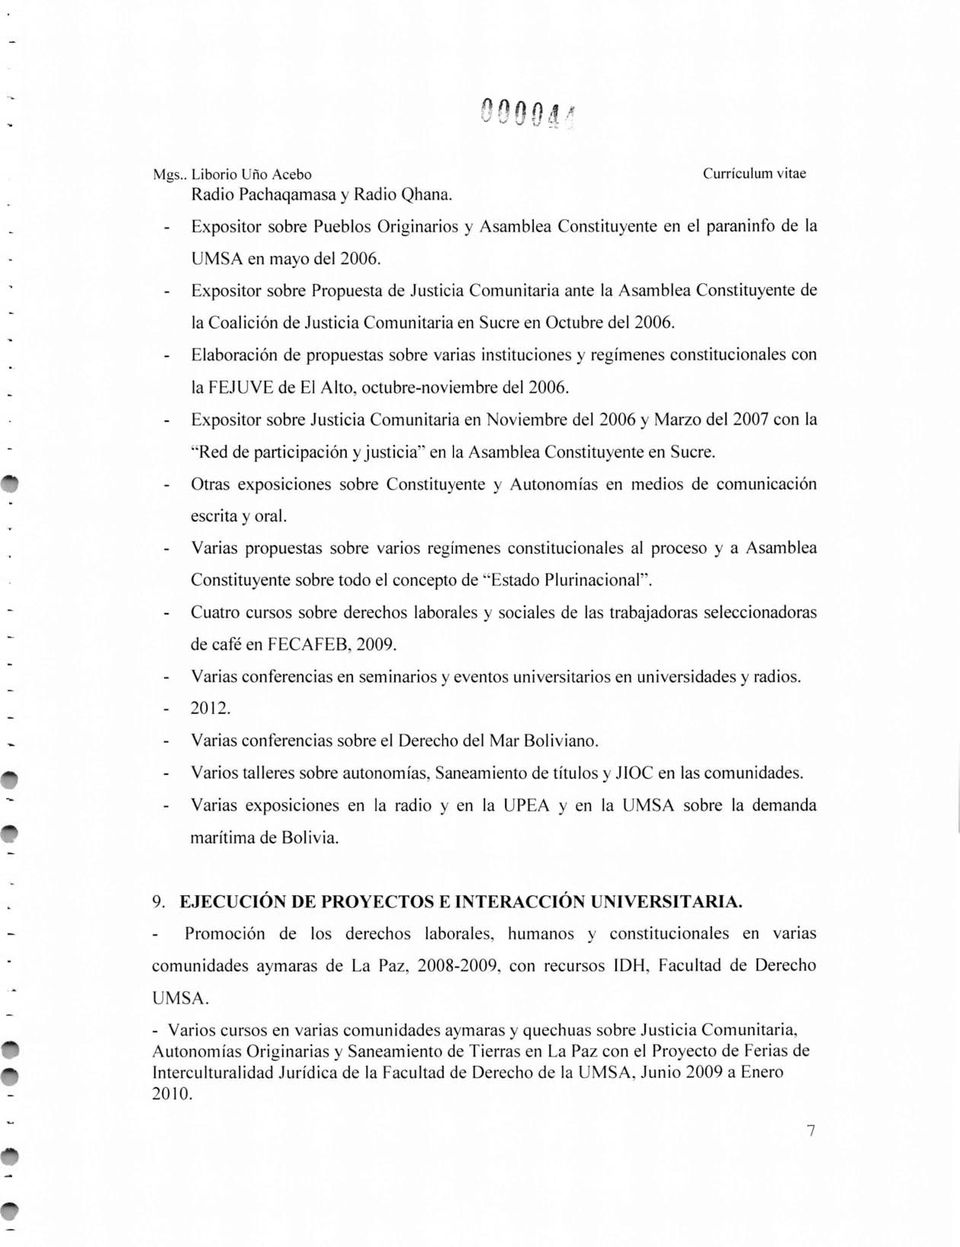 Elaboración de propuestas sobre varias instituciones y regímenes constitucionales con la FEJUVE de El Alto, octubre-noviembre del 2006.